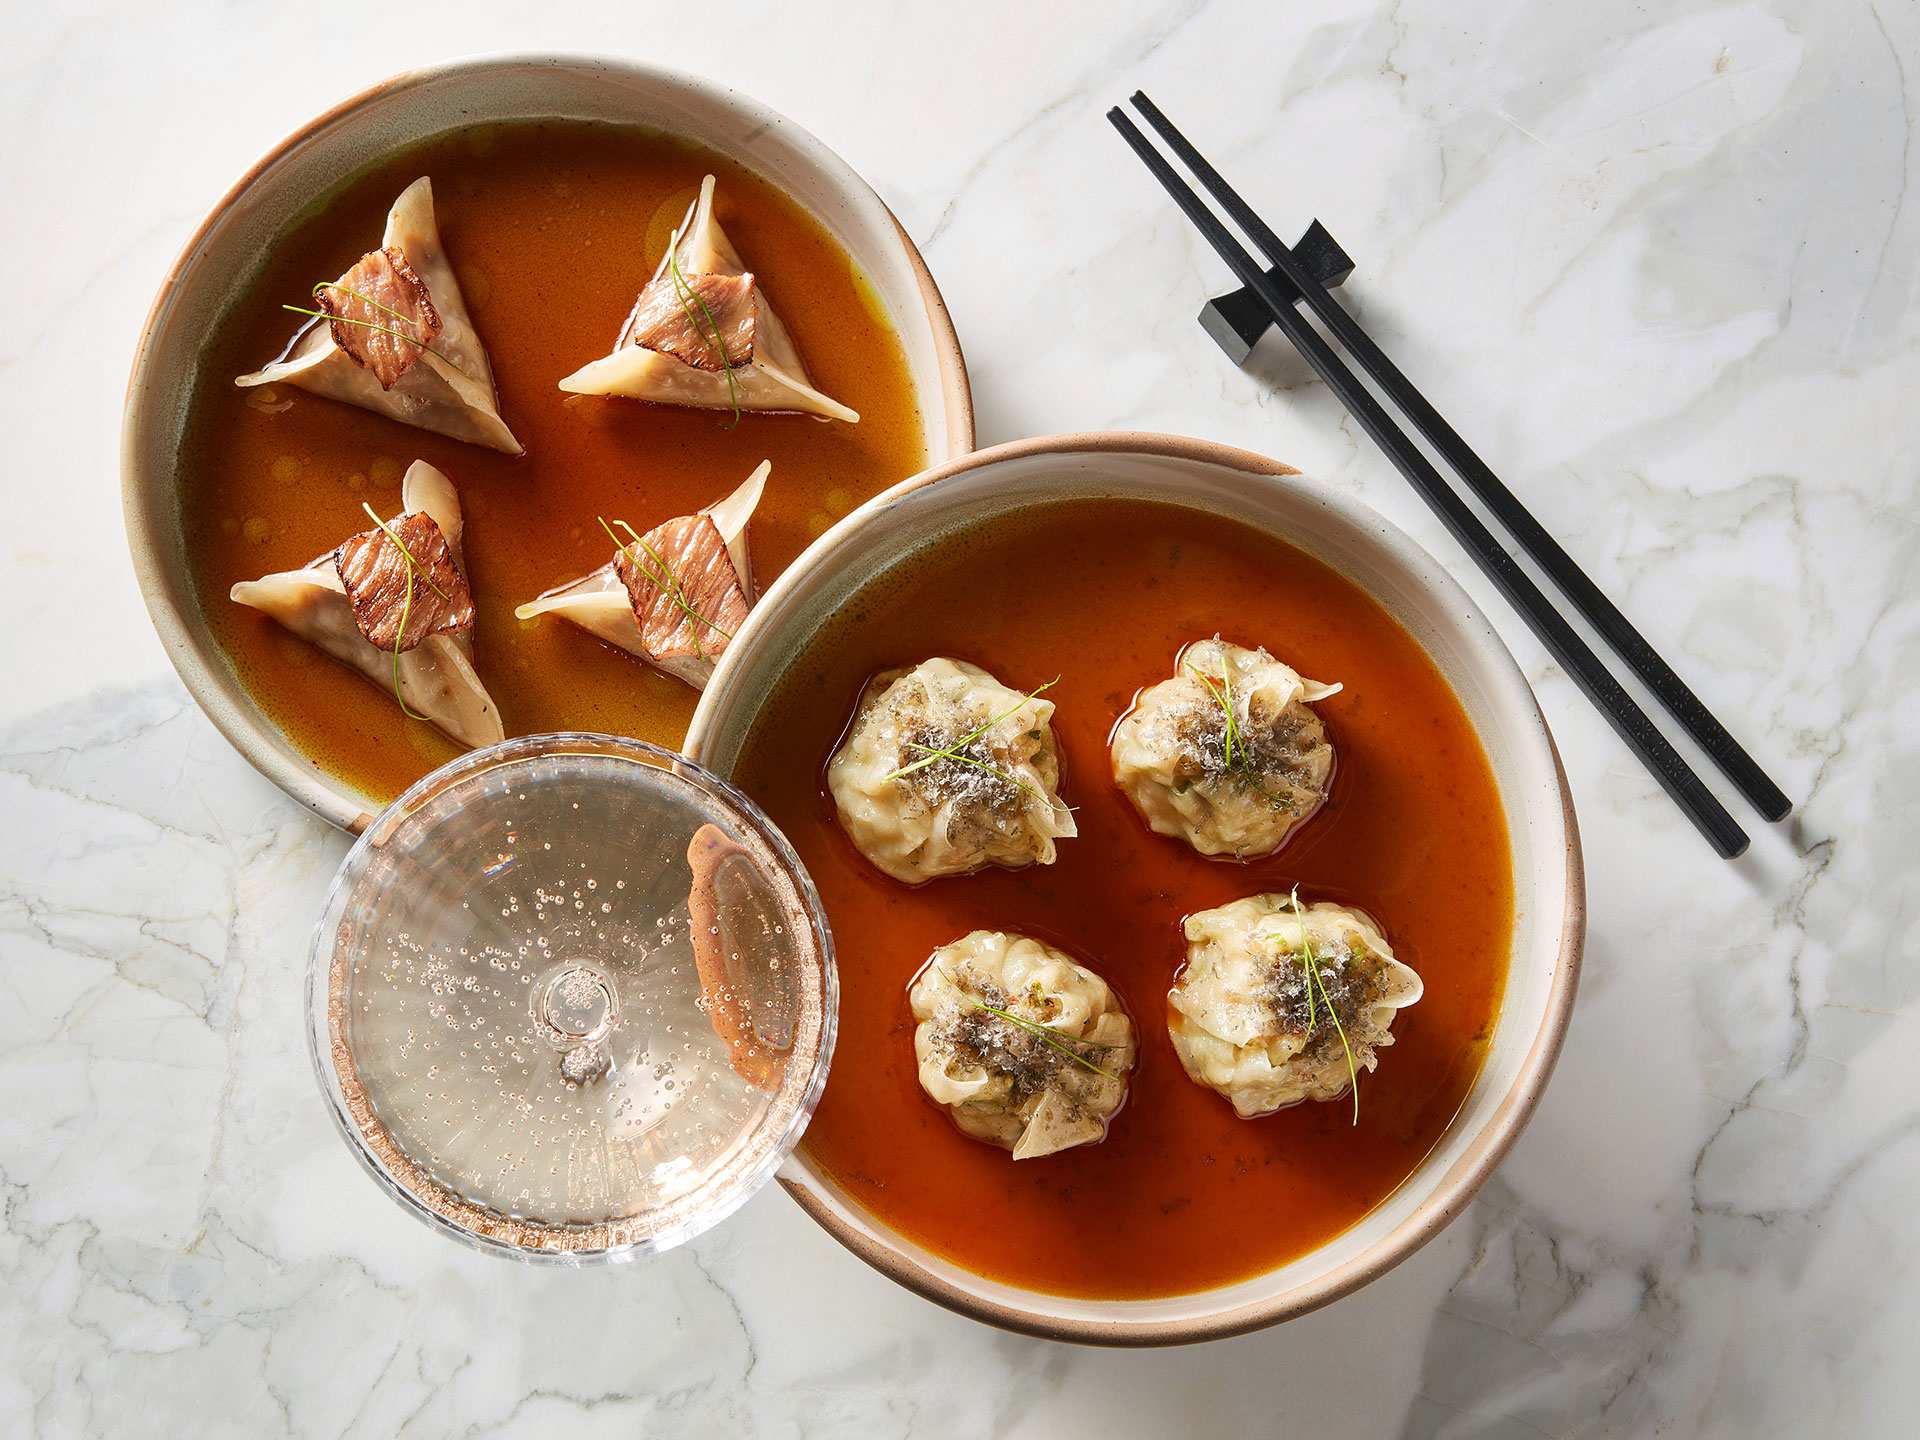 Best restaurants Toronto | An assortment of dumplings at AP